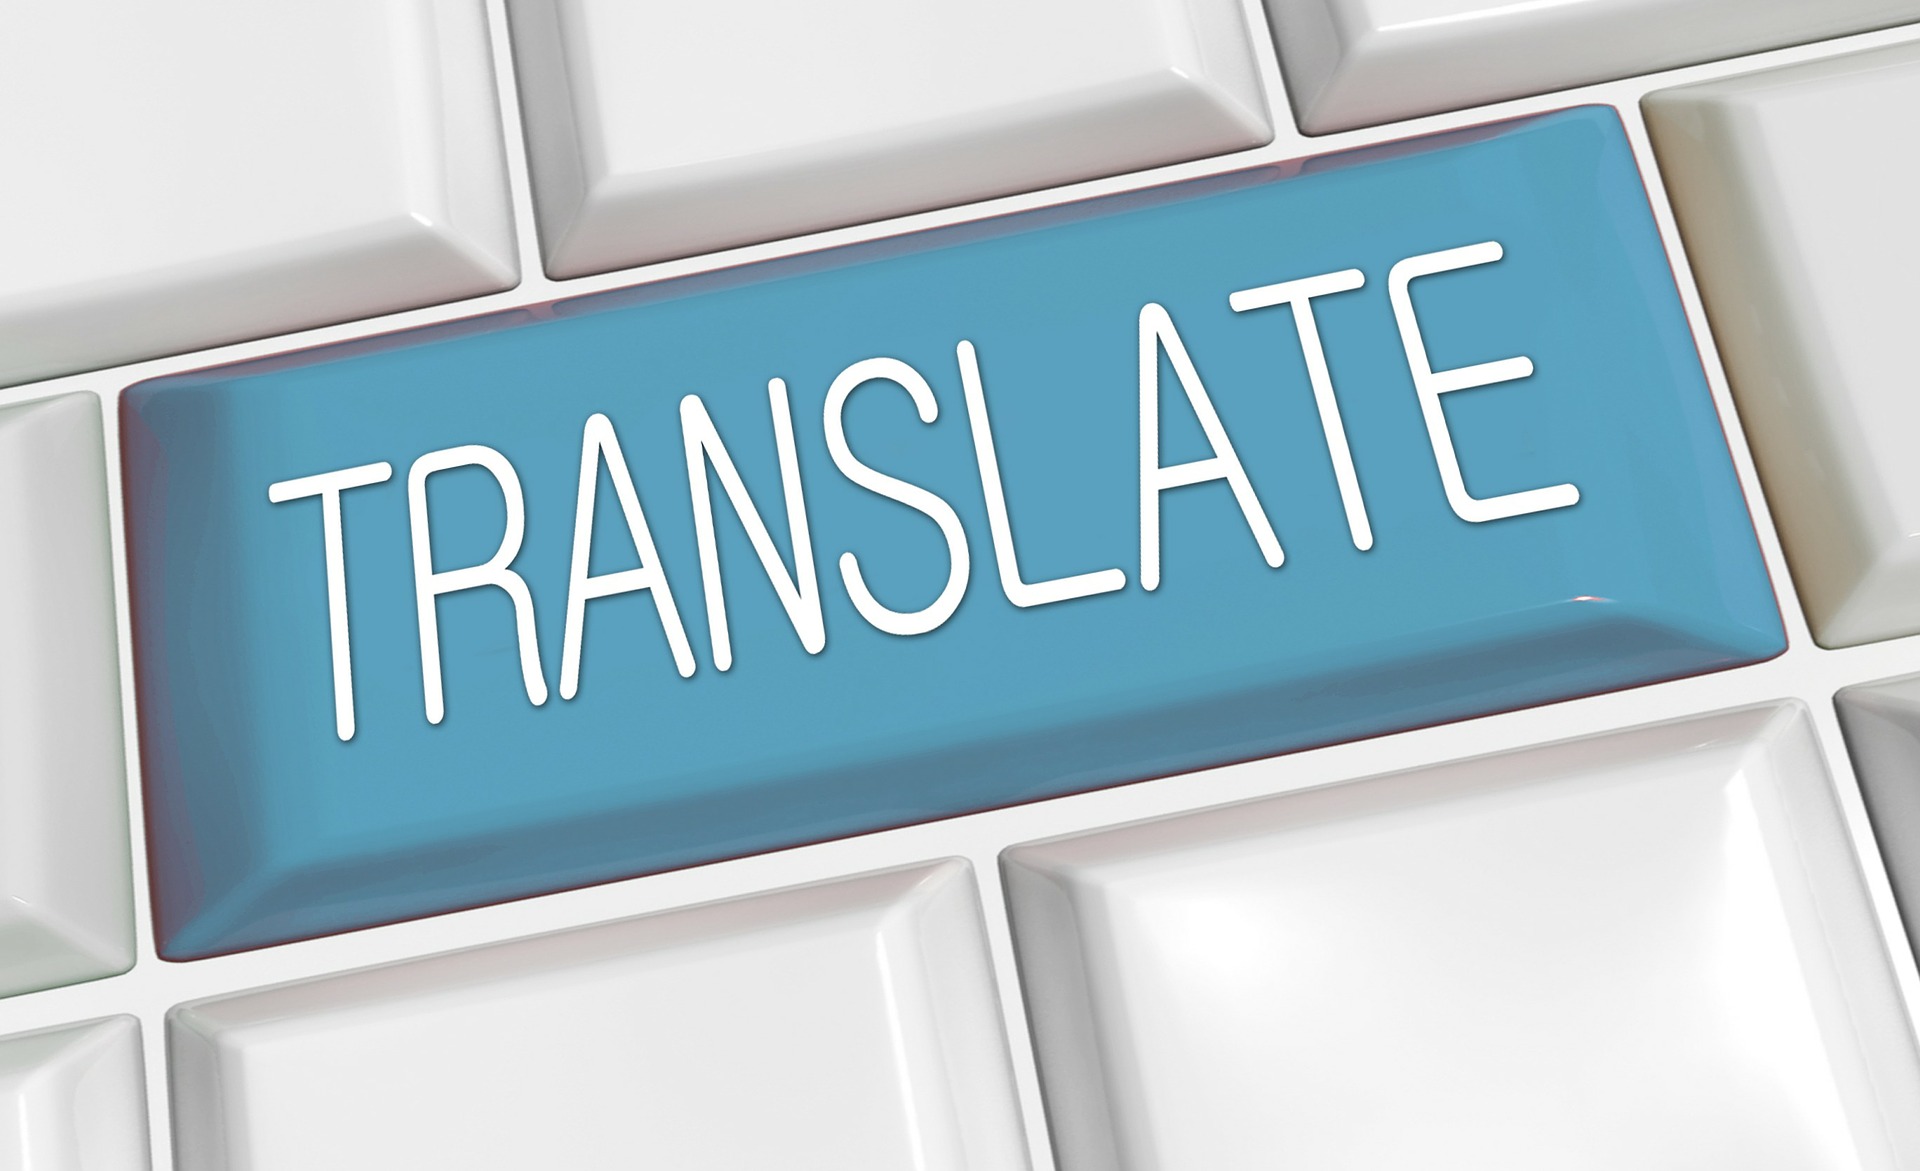 Je bekijkt nu Online vertalen wat zijn de opties?